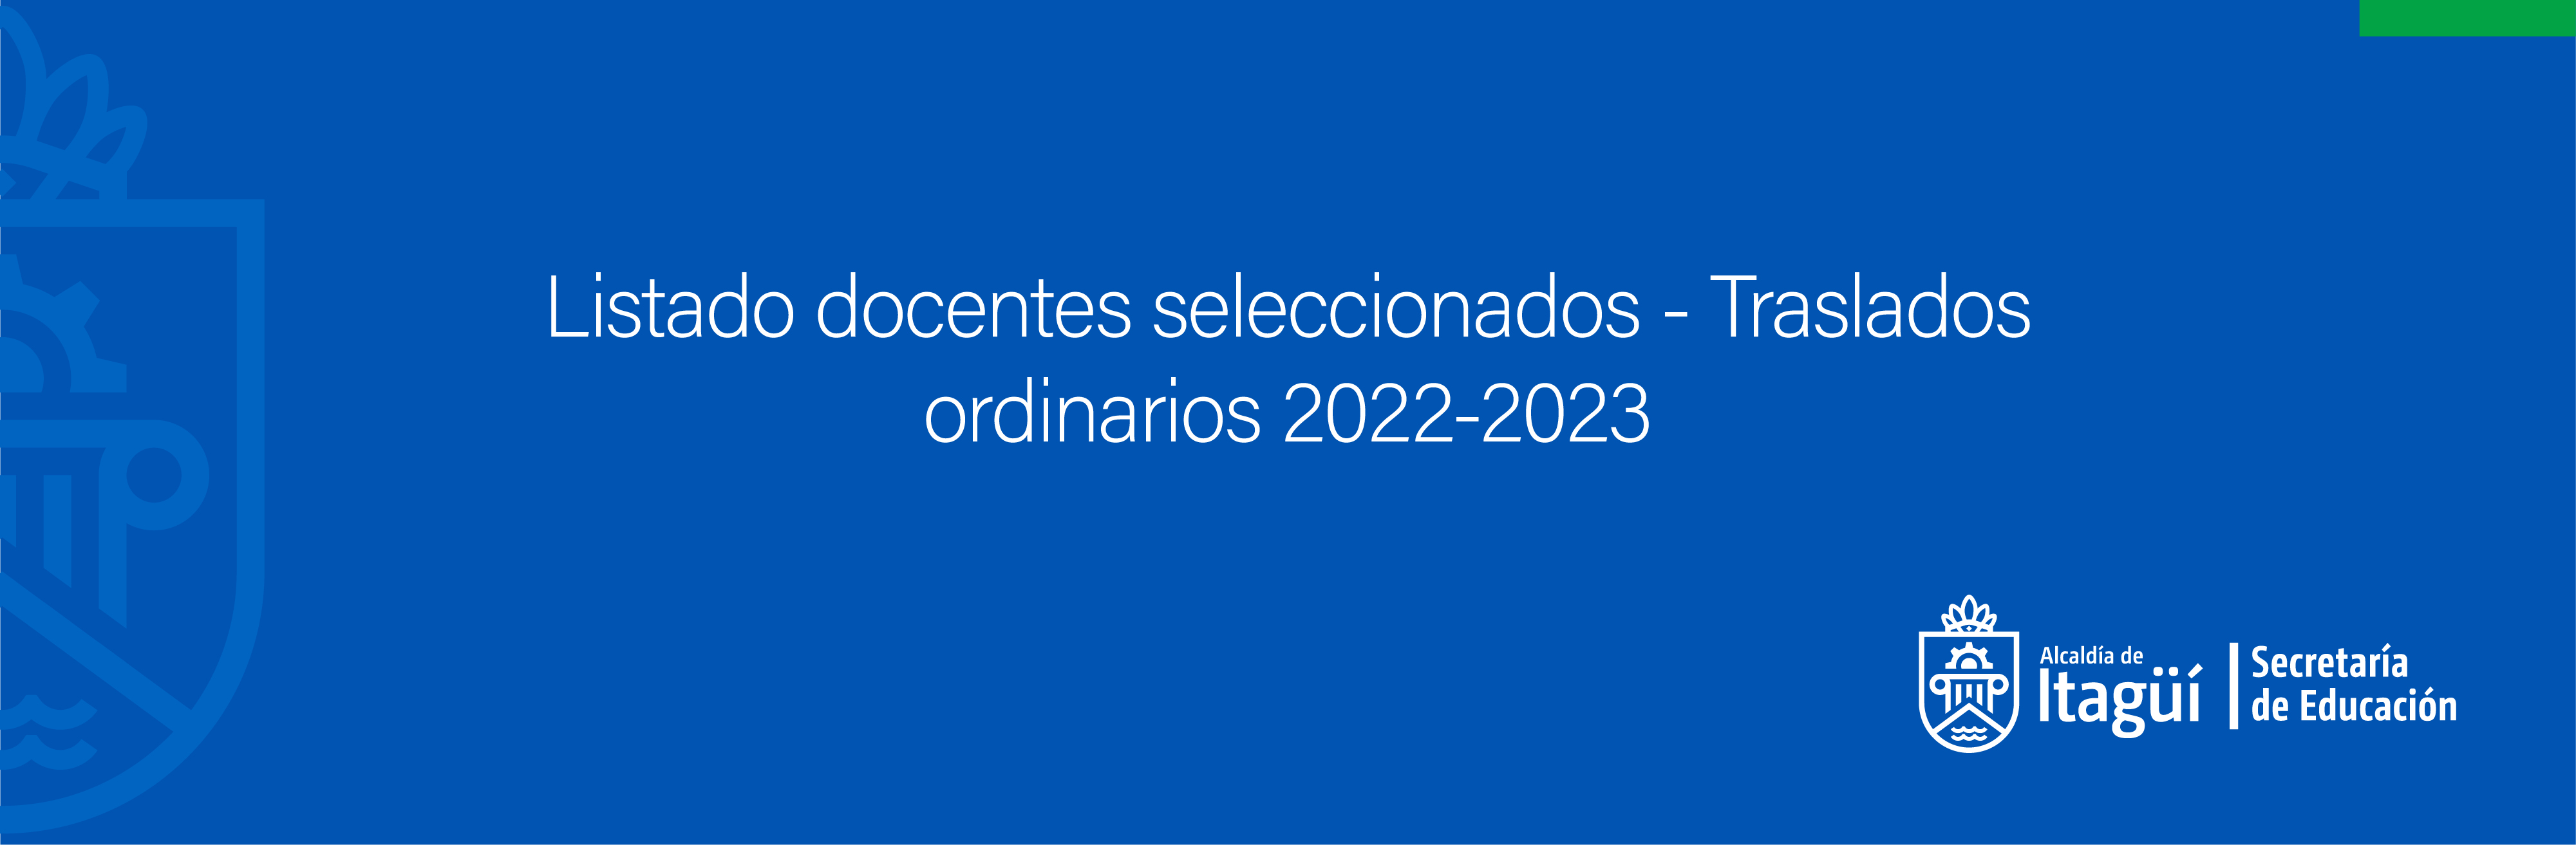 Listado docentes seleccionados - Traslados ordinarios 2022-2023